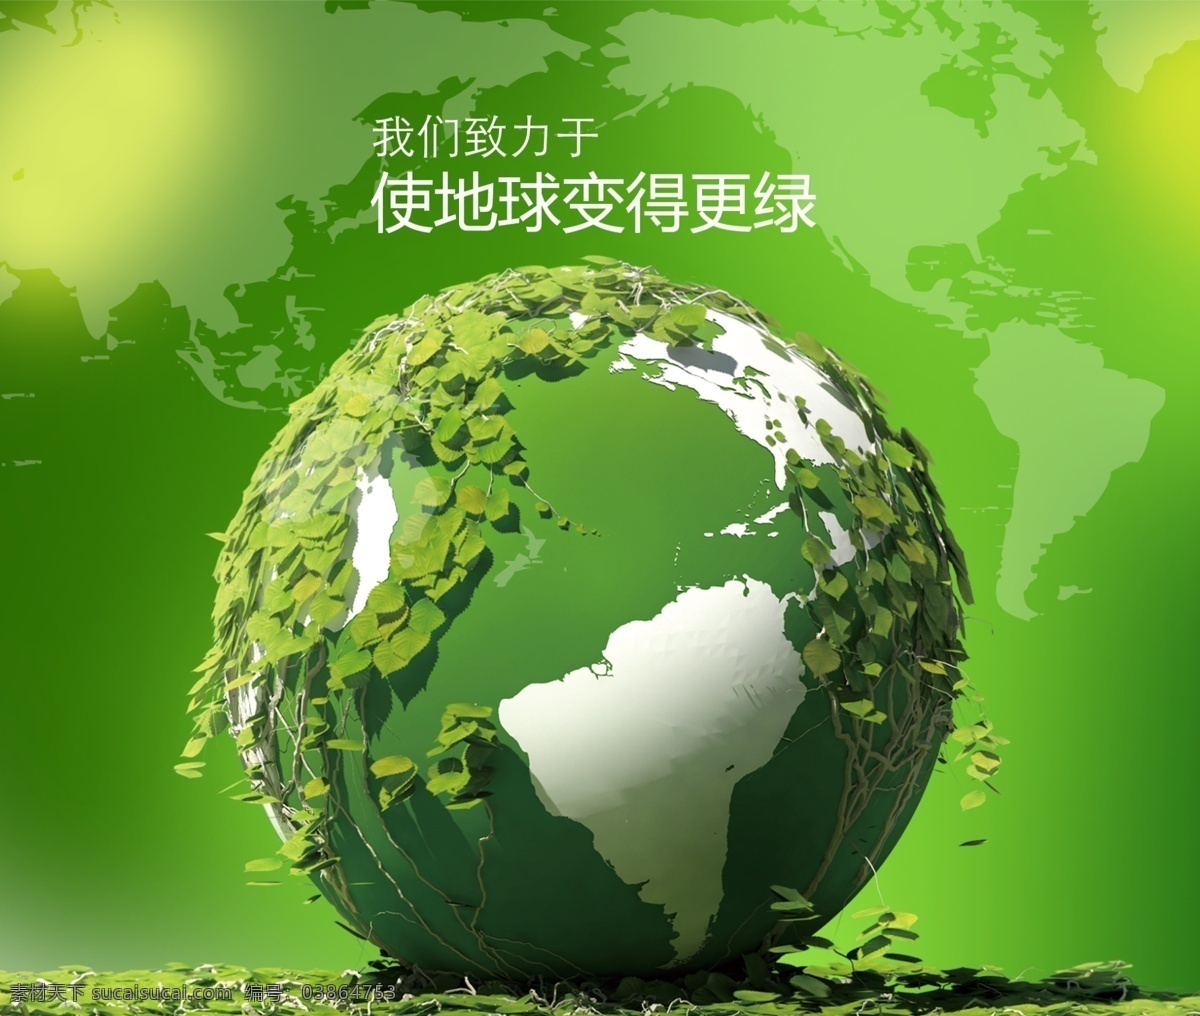 绿色 地球 环保 绿 草绿色 绿色地球 环保地球 绿草地球 绿色世界 绿色环保 环保背景 节能减排 草地 绿草 家园 环保素材 环保风景 展板模板